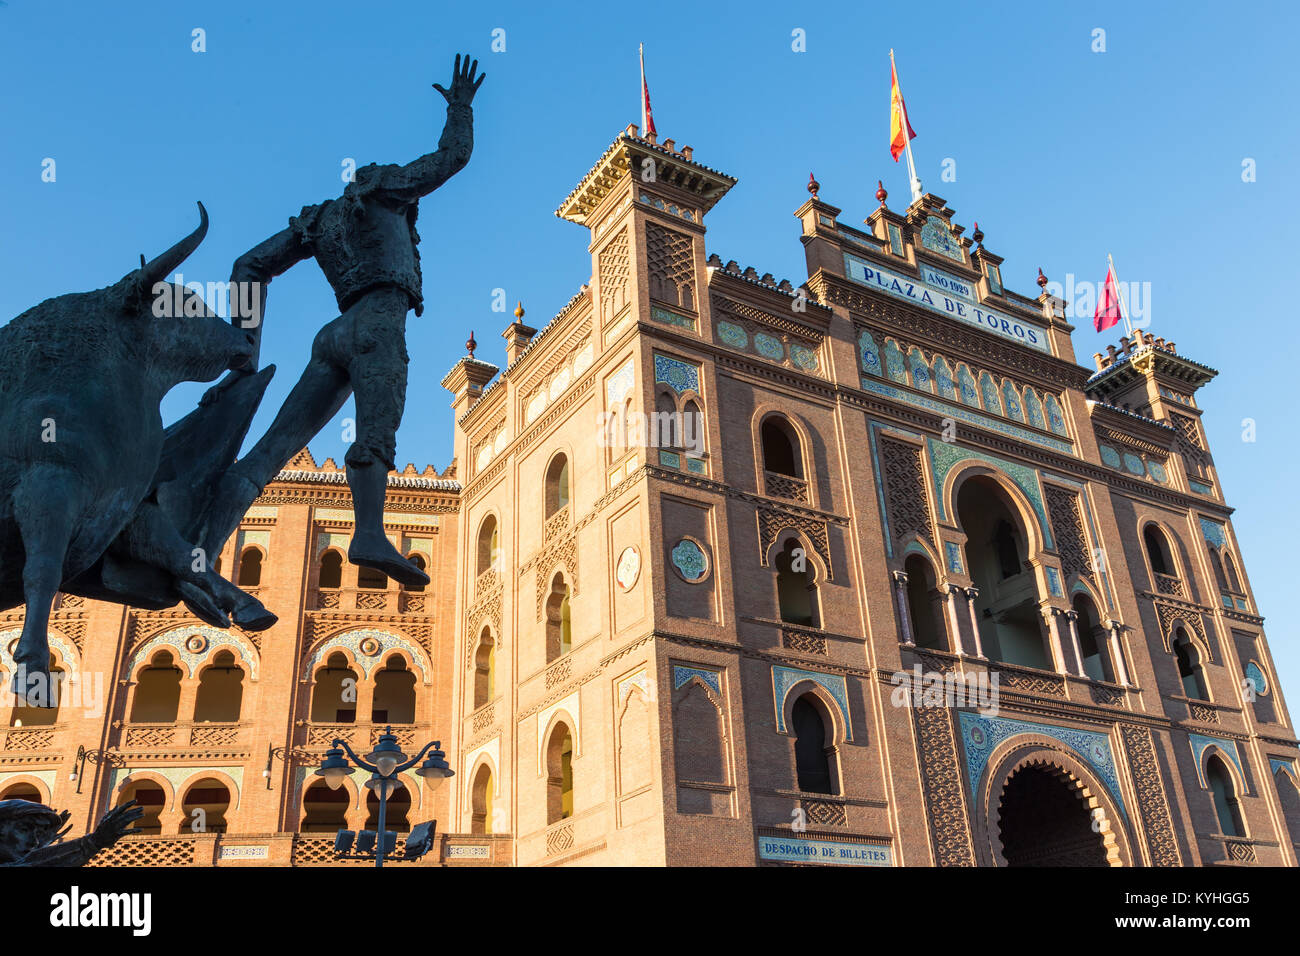 Bullfighter sculpture in front of Bullfighting arena Plaza de Toros de Las Ventas in Madrid, Spain. Stock Photo